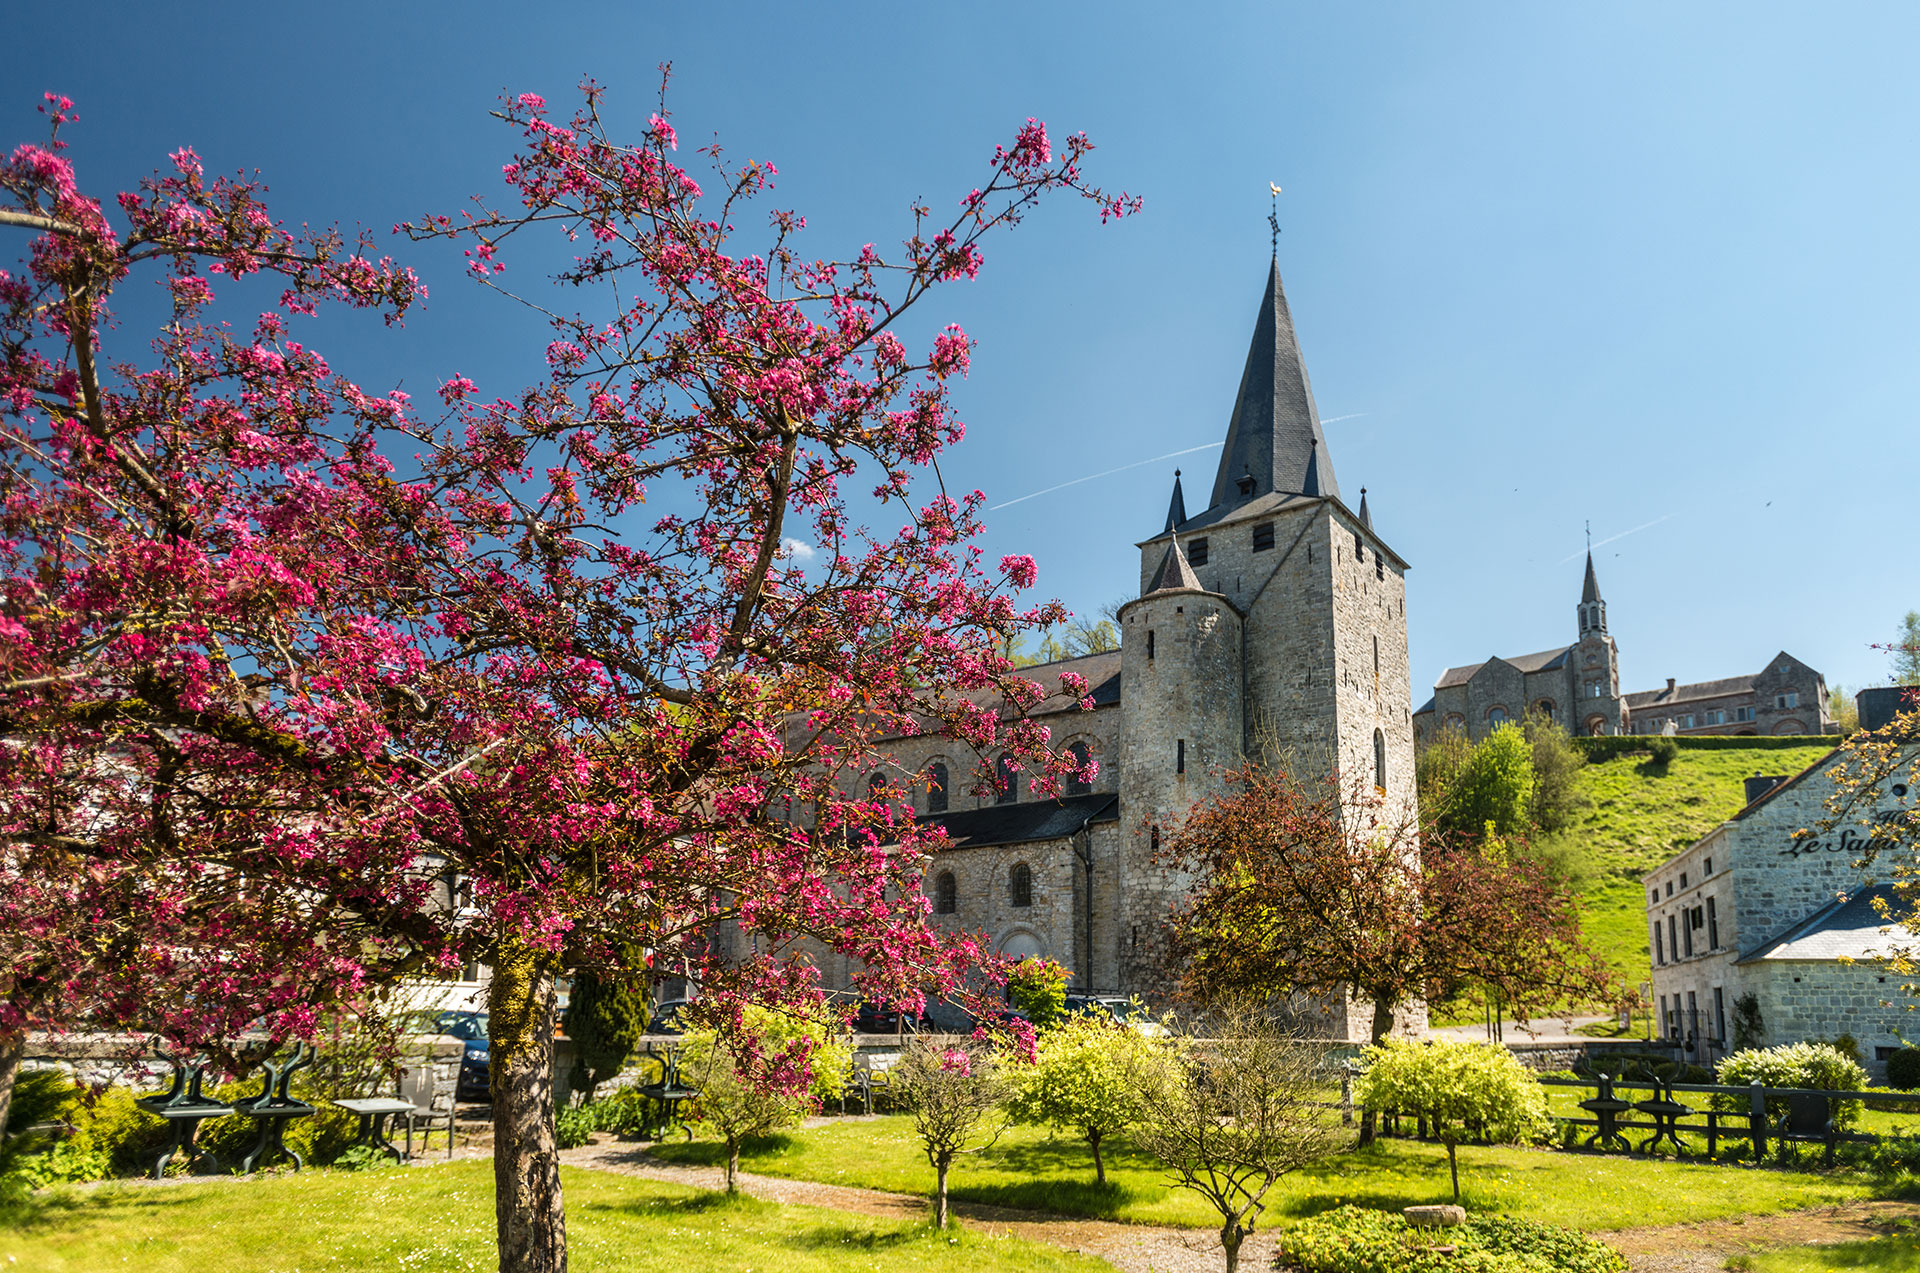 Vue extérieure de la collégiale Saint-Hadelin entourée d'arbres fleuris